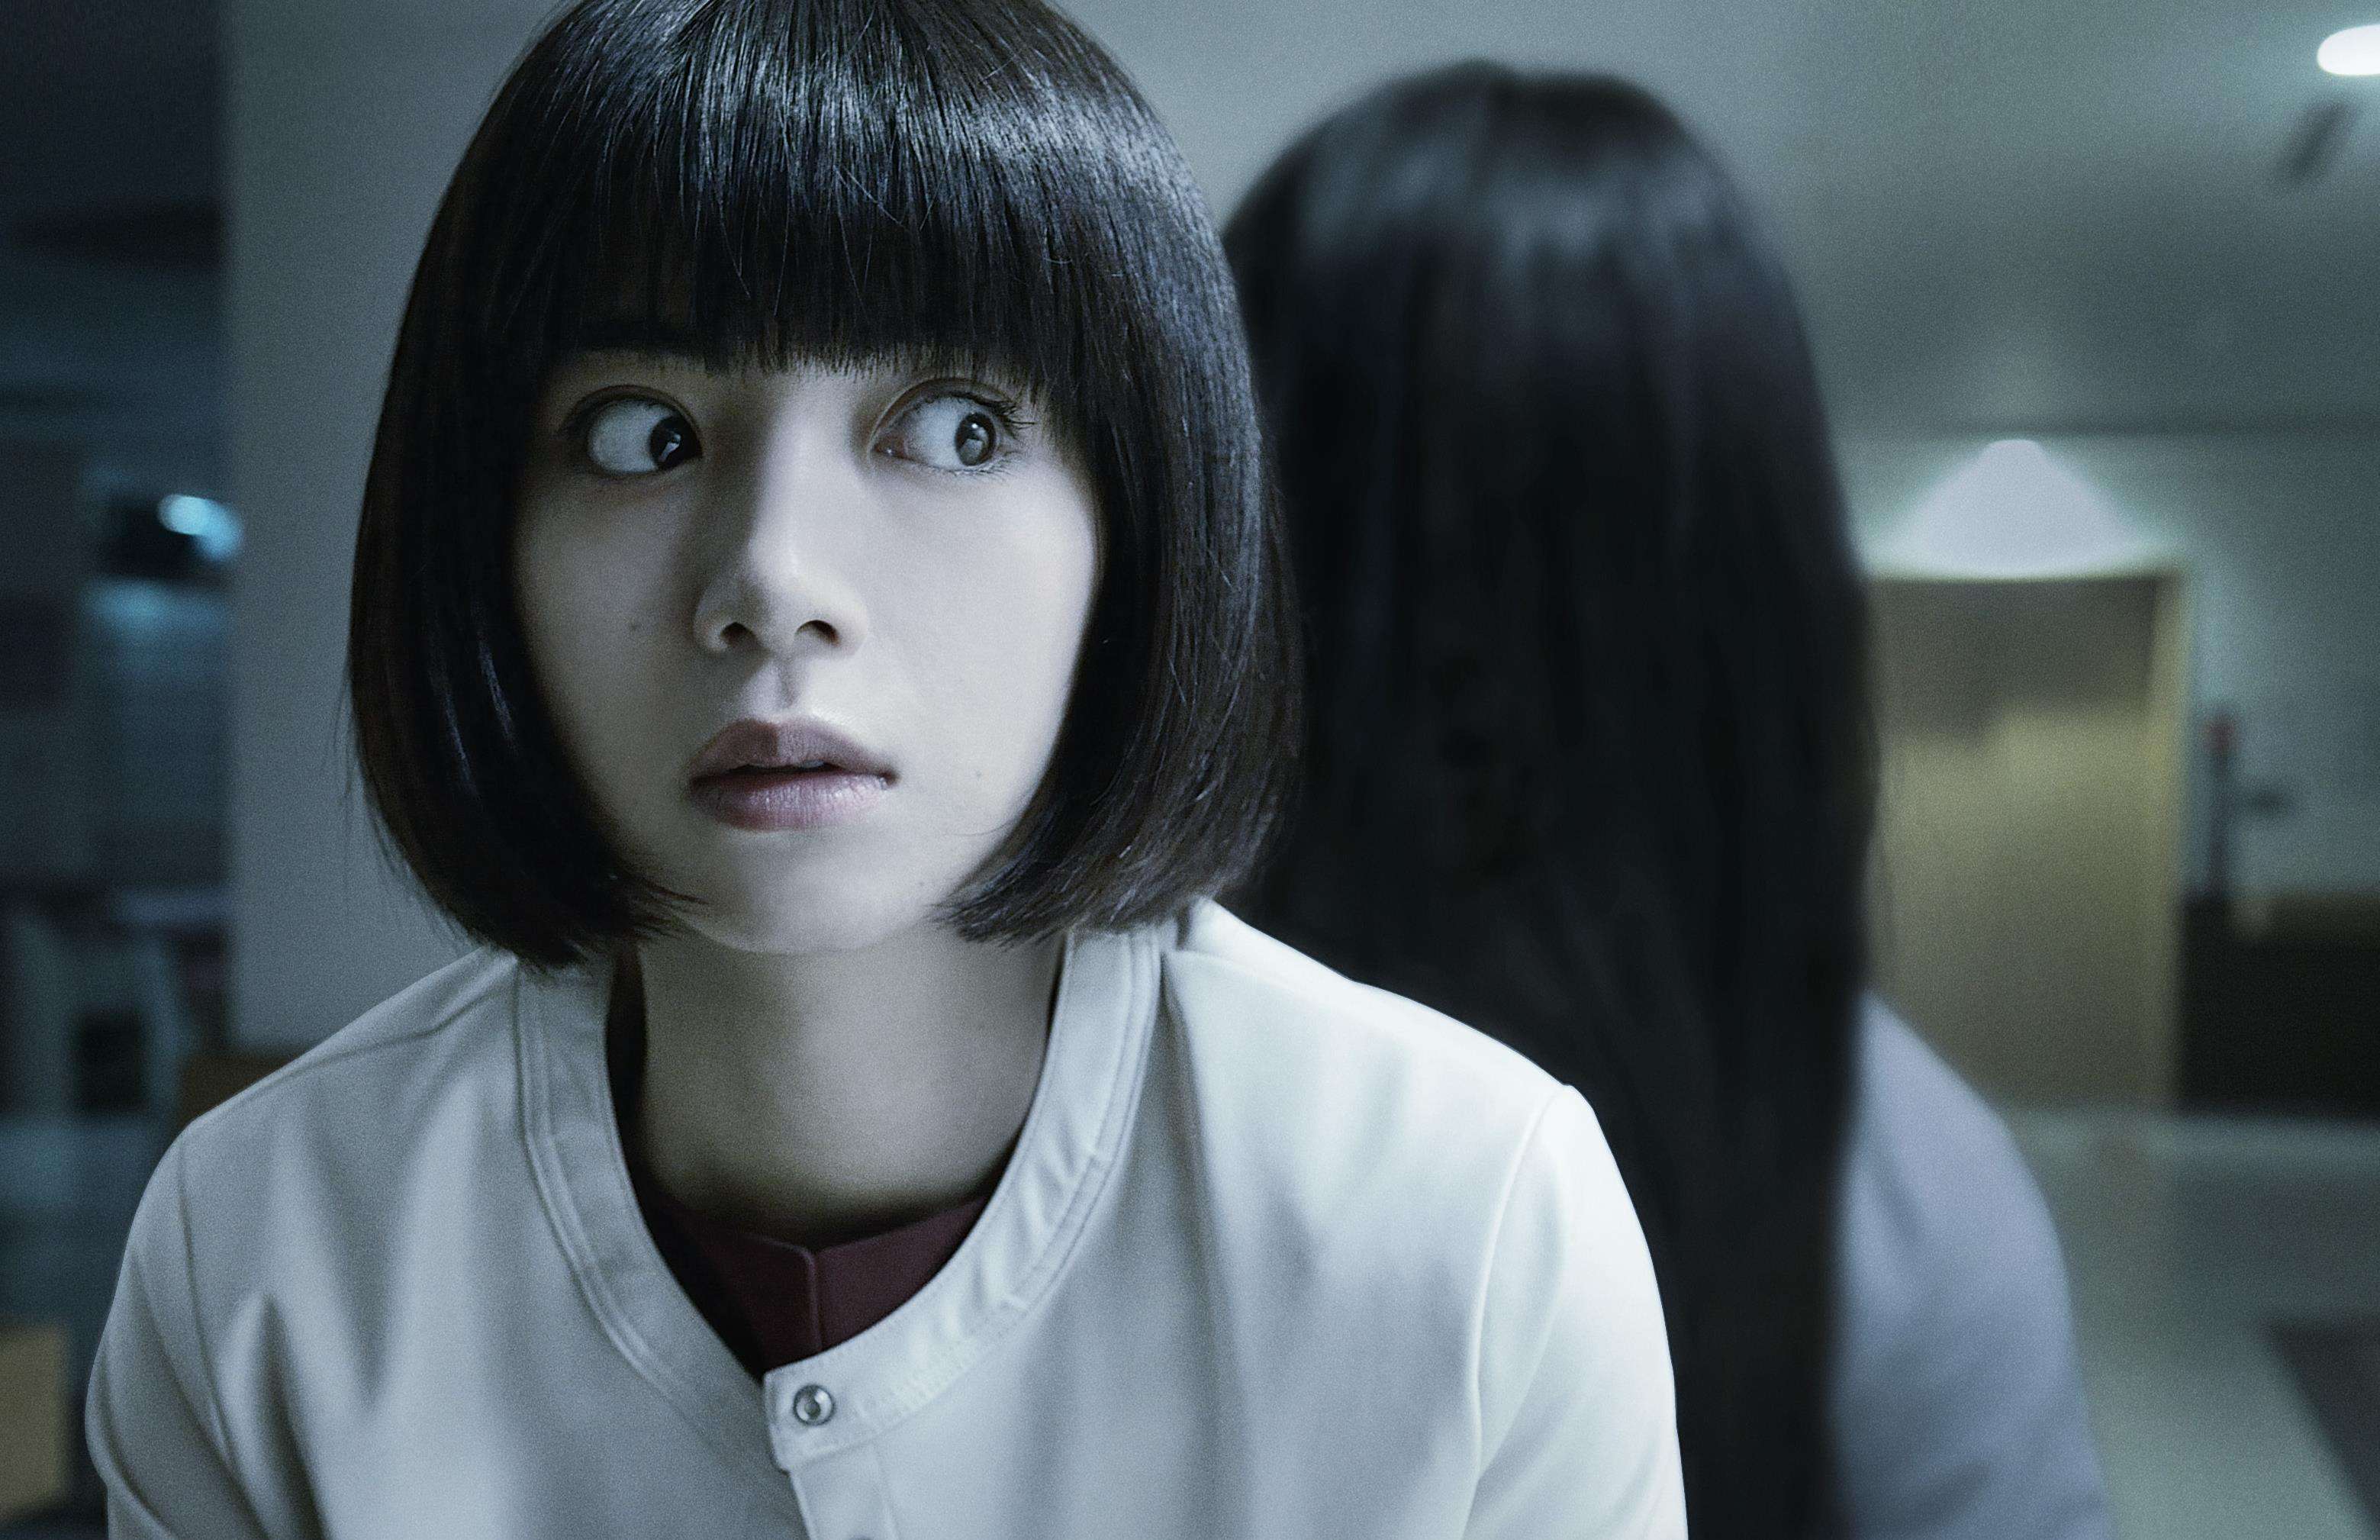 《夜半凶铃》即将上映 日式恐怖电影本土化探索